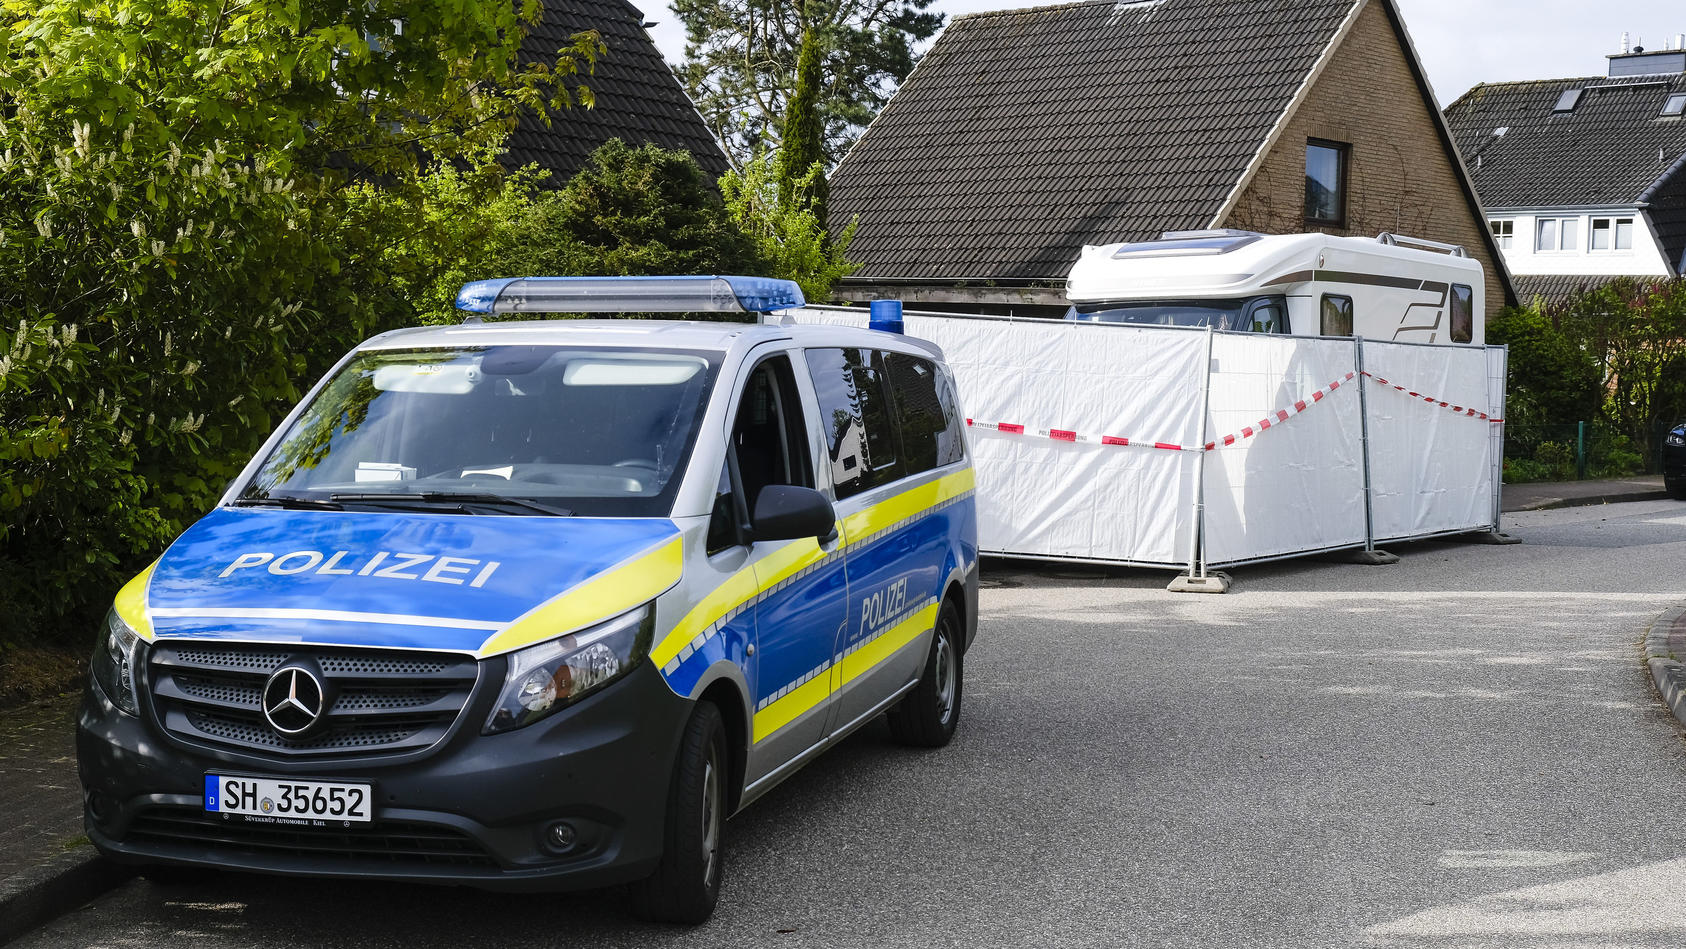 Am 19. Mai 2021 werden nach mehreren Schüssen zwei leblose Personen in Dänischenhagen gefunden